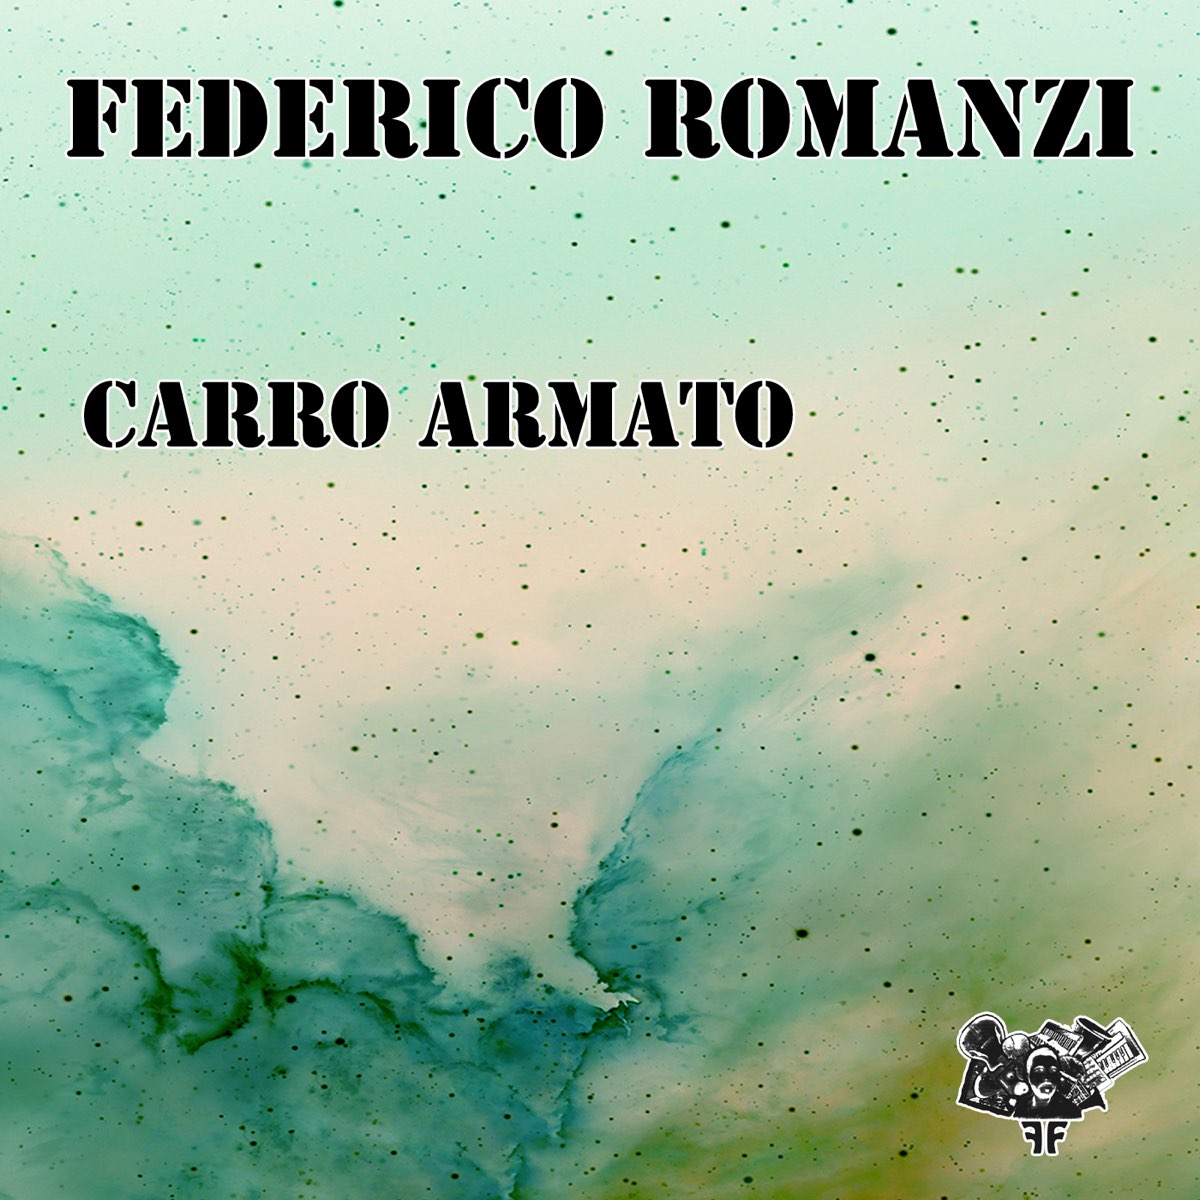 ‎Carro armato - Single by Federico Romanzi on Apple Music